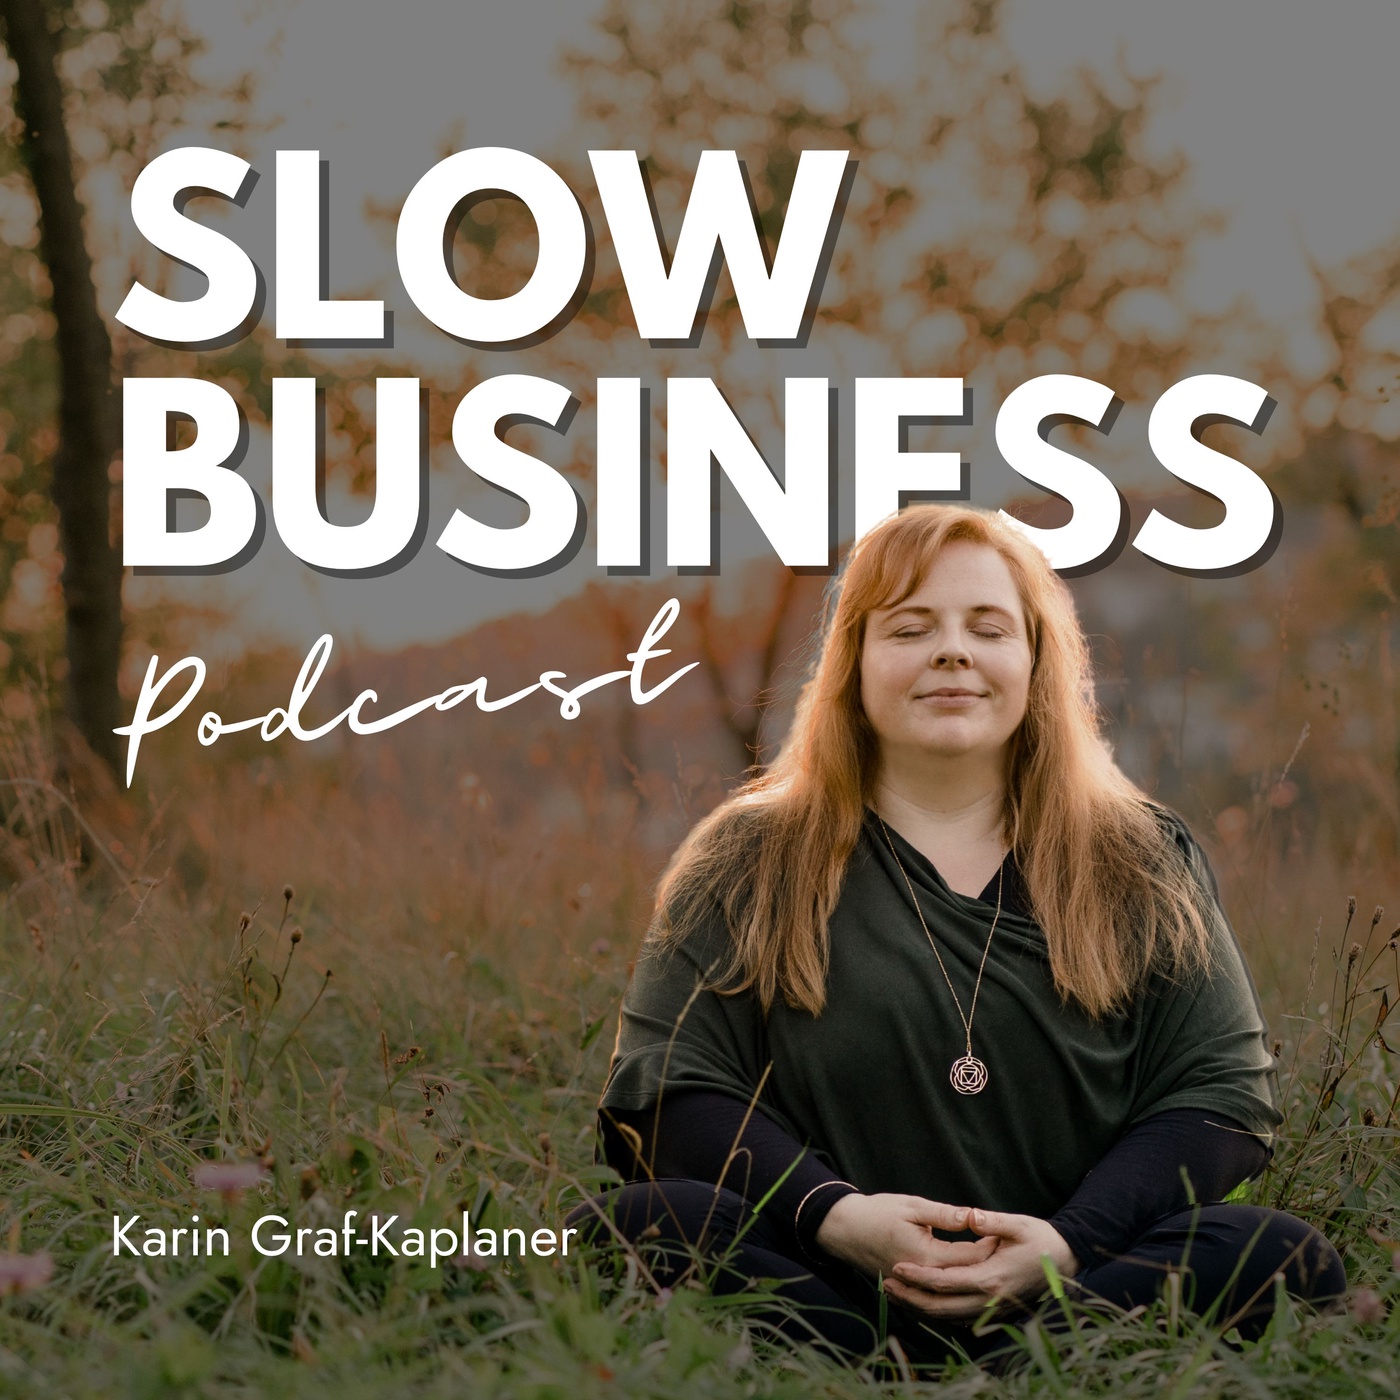 Slow Business Podcast - Strategie, Achtsamkeit, Werte & nachhaltiger Erfolg ohne auszubrennen